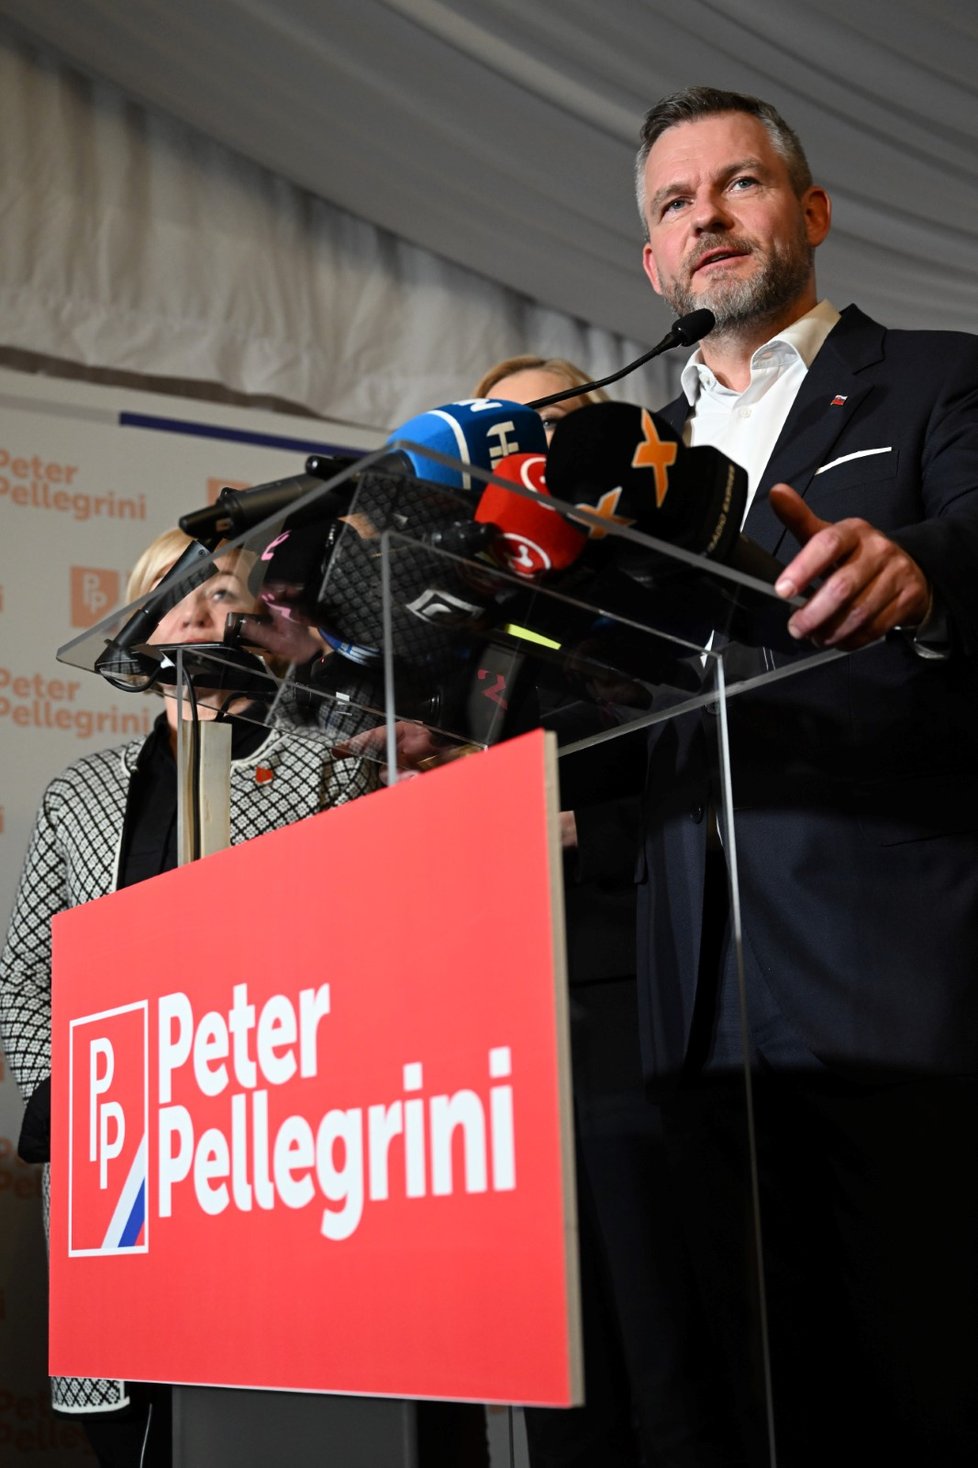 Peter Pellegrini komentuje výsledky prvního kola prezidentských voleb ve svém volebním štábu.